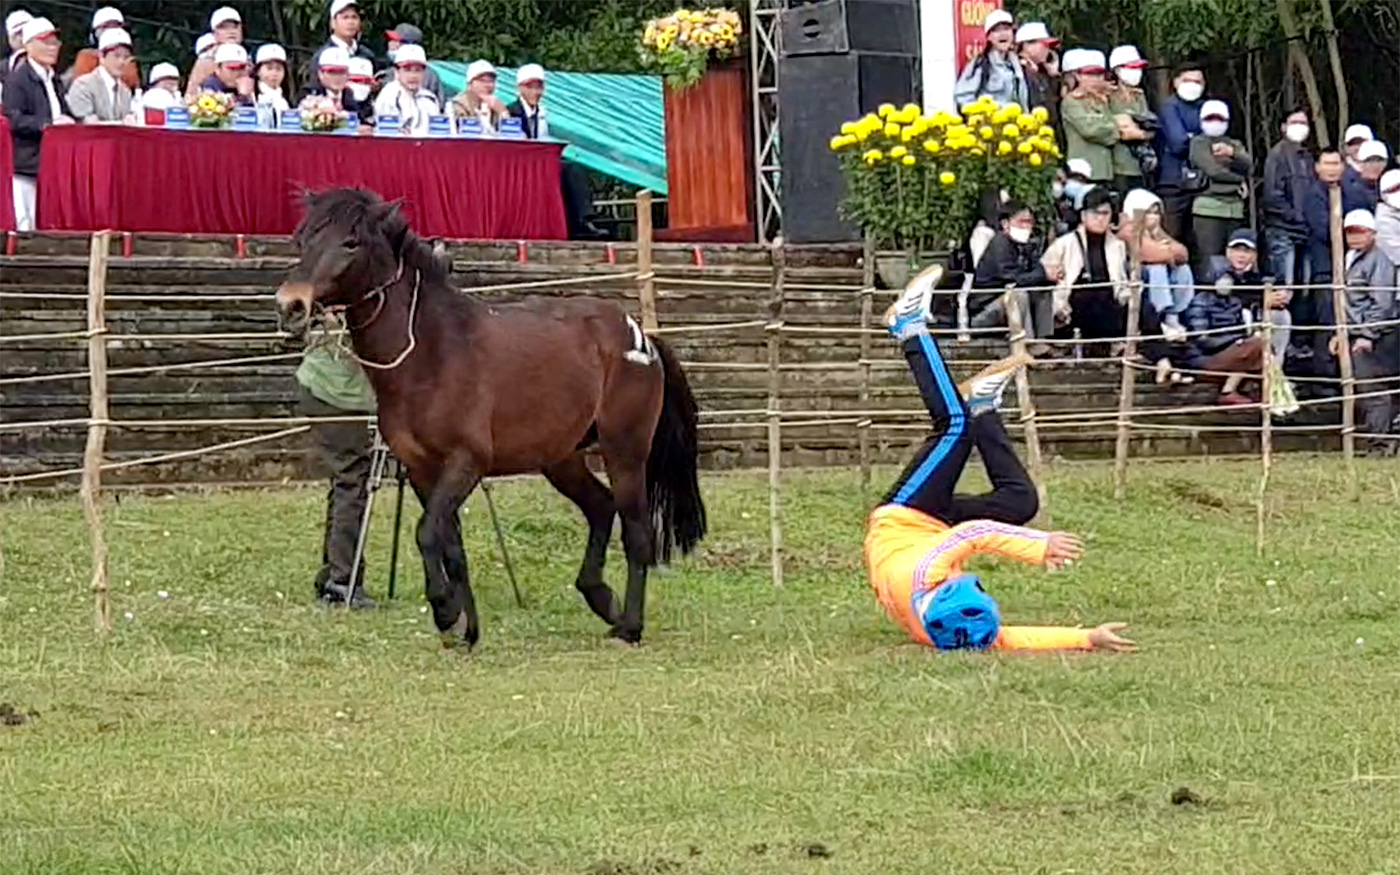 "Cười bò" với hội đua ngựa mỗi năm chỉ một lần tổ chức vào dịp Tết